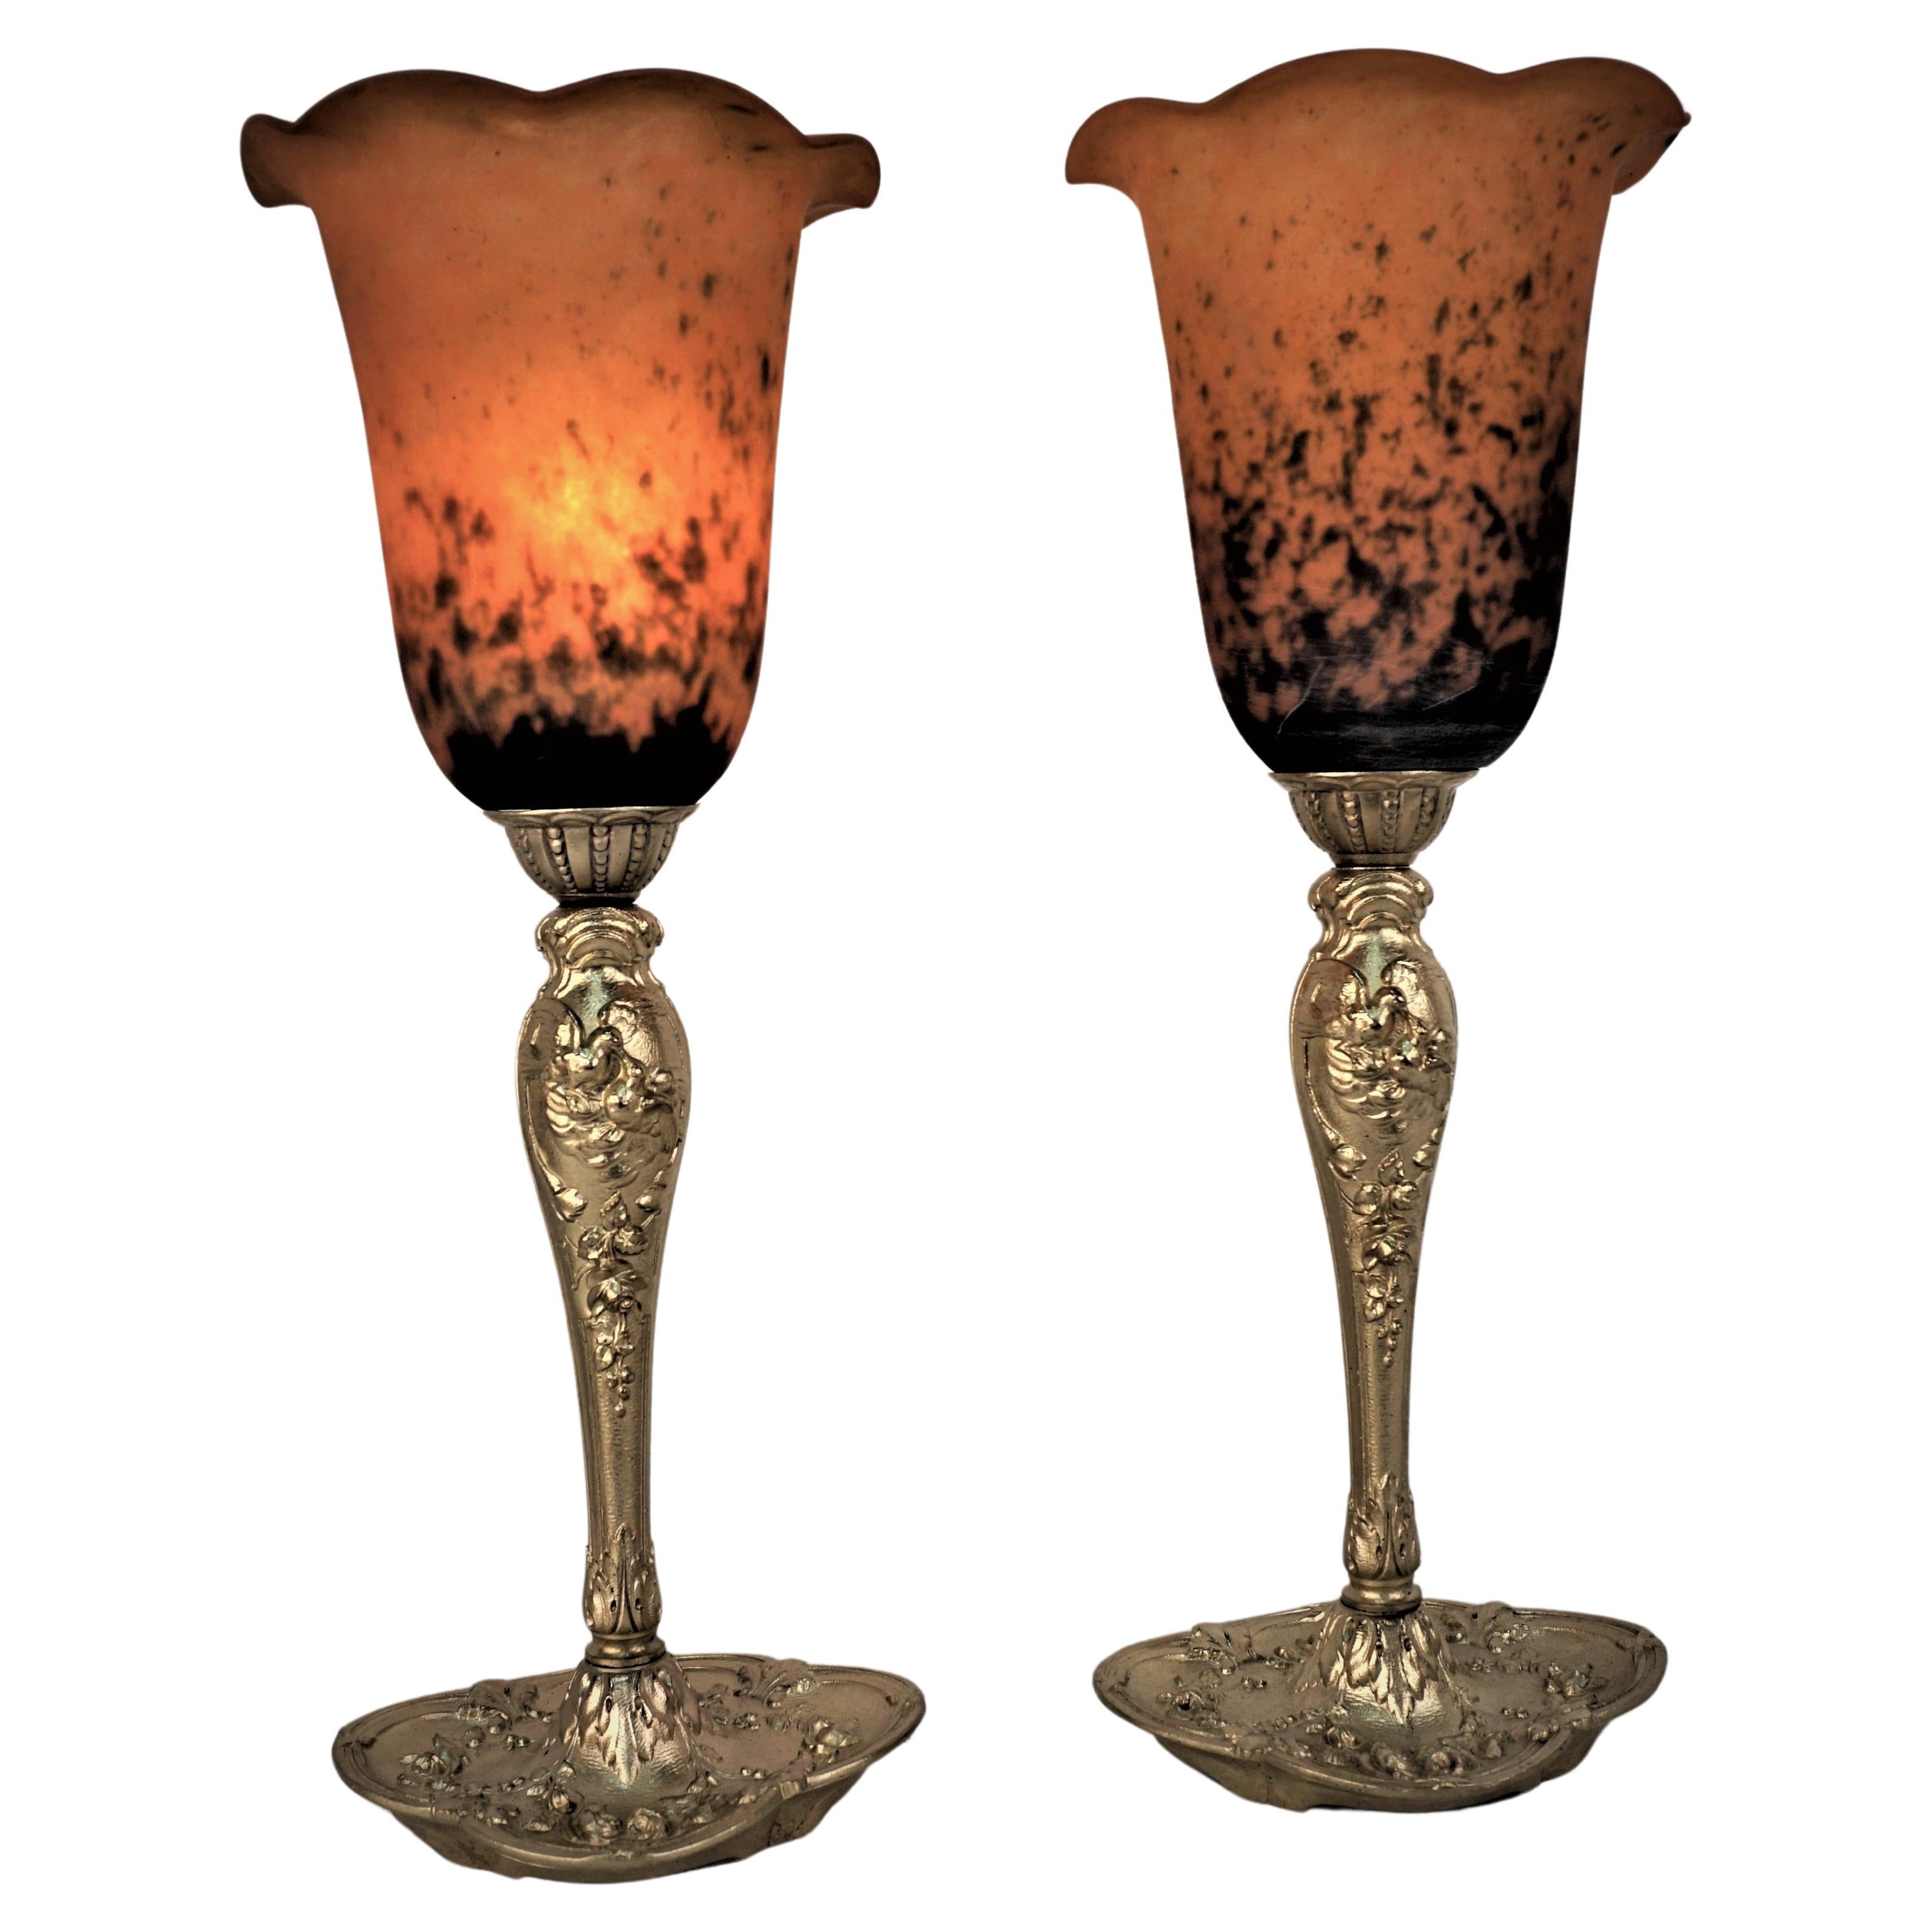 Ein Paar Tischlampen aus mundgeblasenem Glas mit elegantem Bronzefuß.
Professionell neu verkabelt, 100-Watt-Glühbirne.